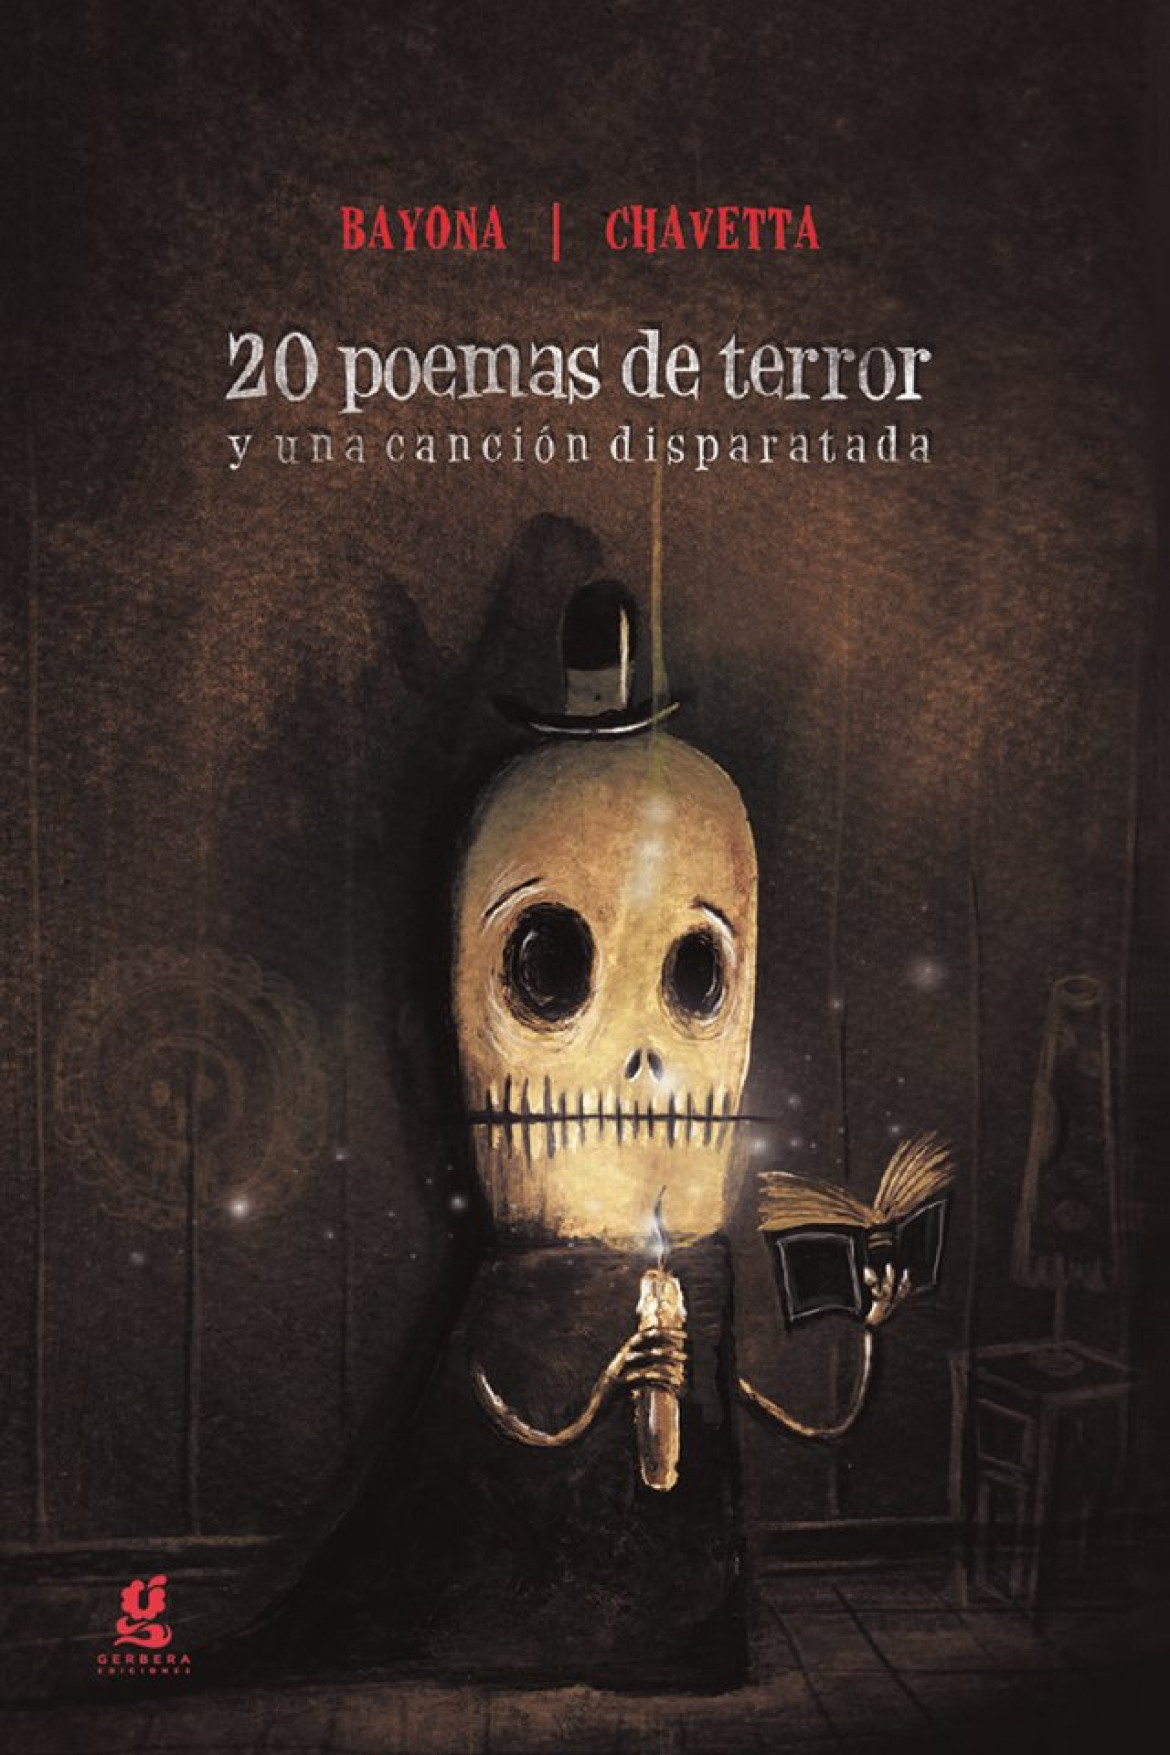 Portada del libro infantil "20 poemas de terror y una canción disparatada". Foto: Gerbera Ediciones.